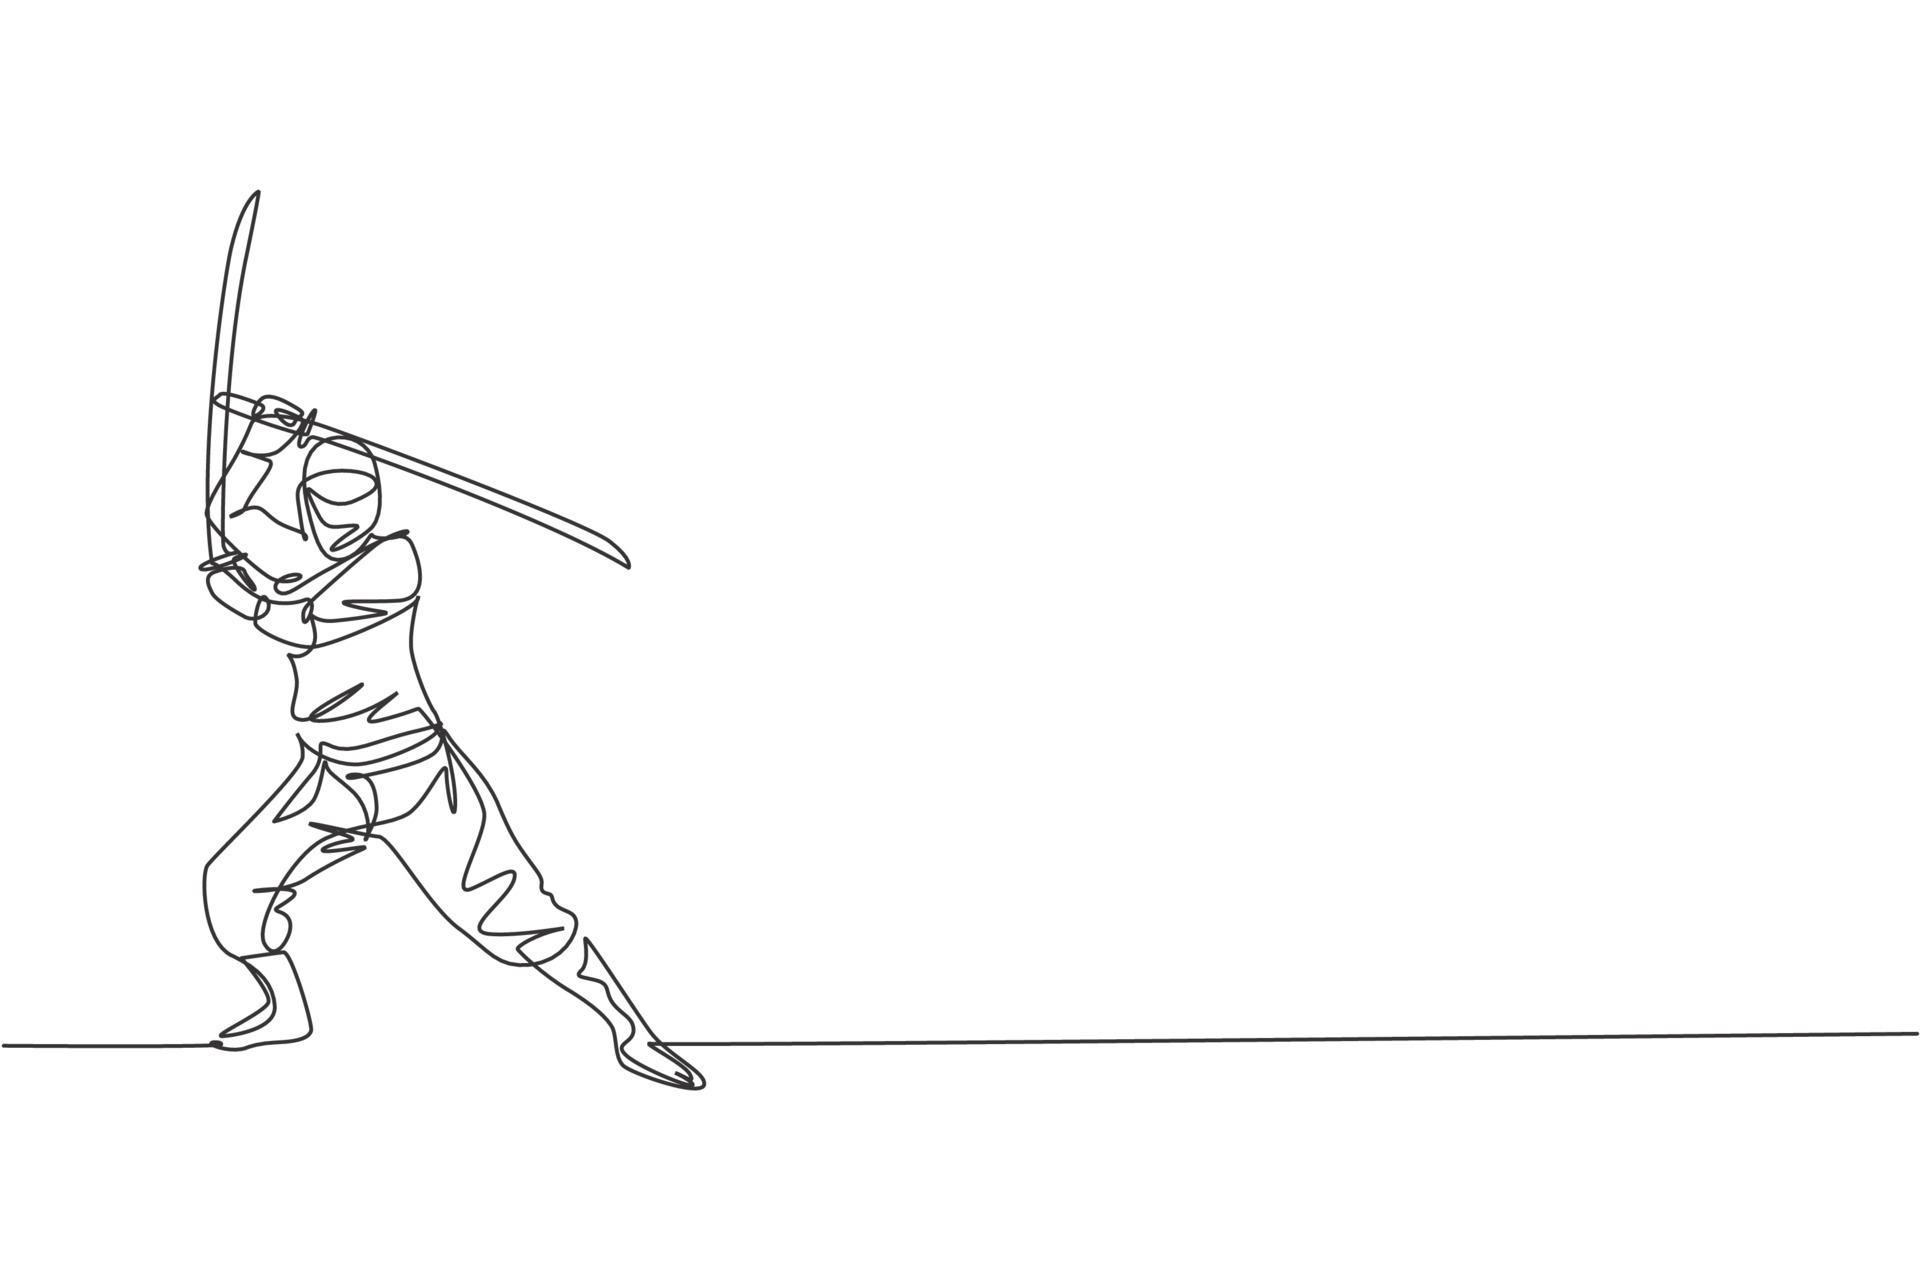 Um Desenho De Linha Contínua De Jovem Personagem Ninja Japonês Corajoso Em  Traje Preto Com Posição De Ataque. Conceito De Luta De Arte Marcial. Linha  Única Dinâmica Desenhar Ilustração Vetorial De Design